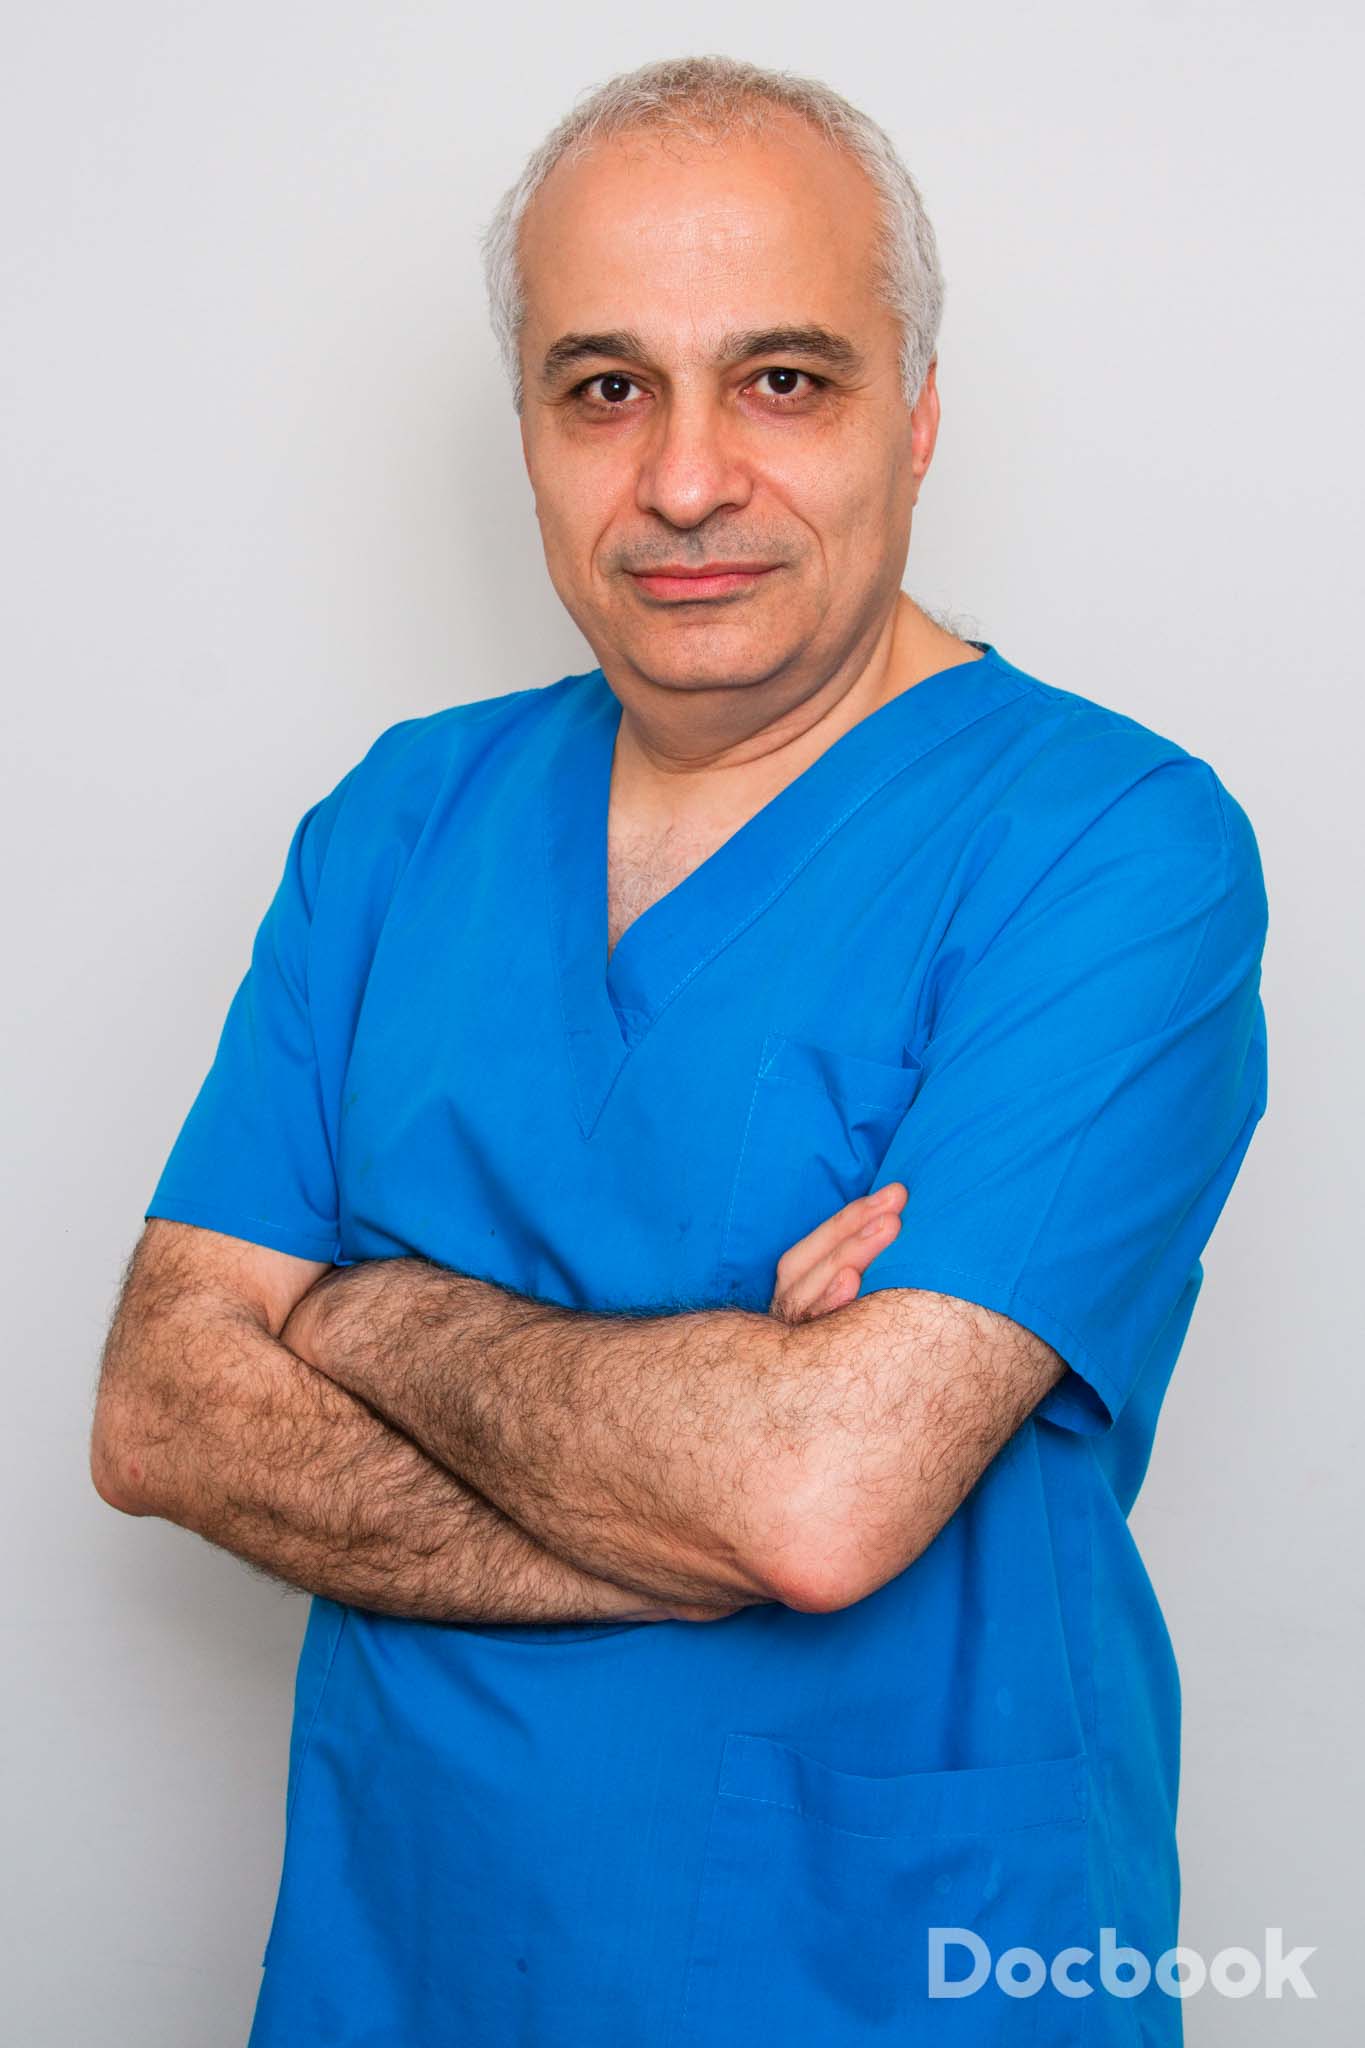 Dr. Mouhhamad Nazemian